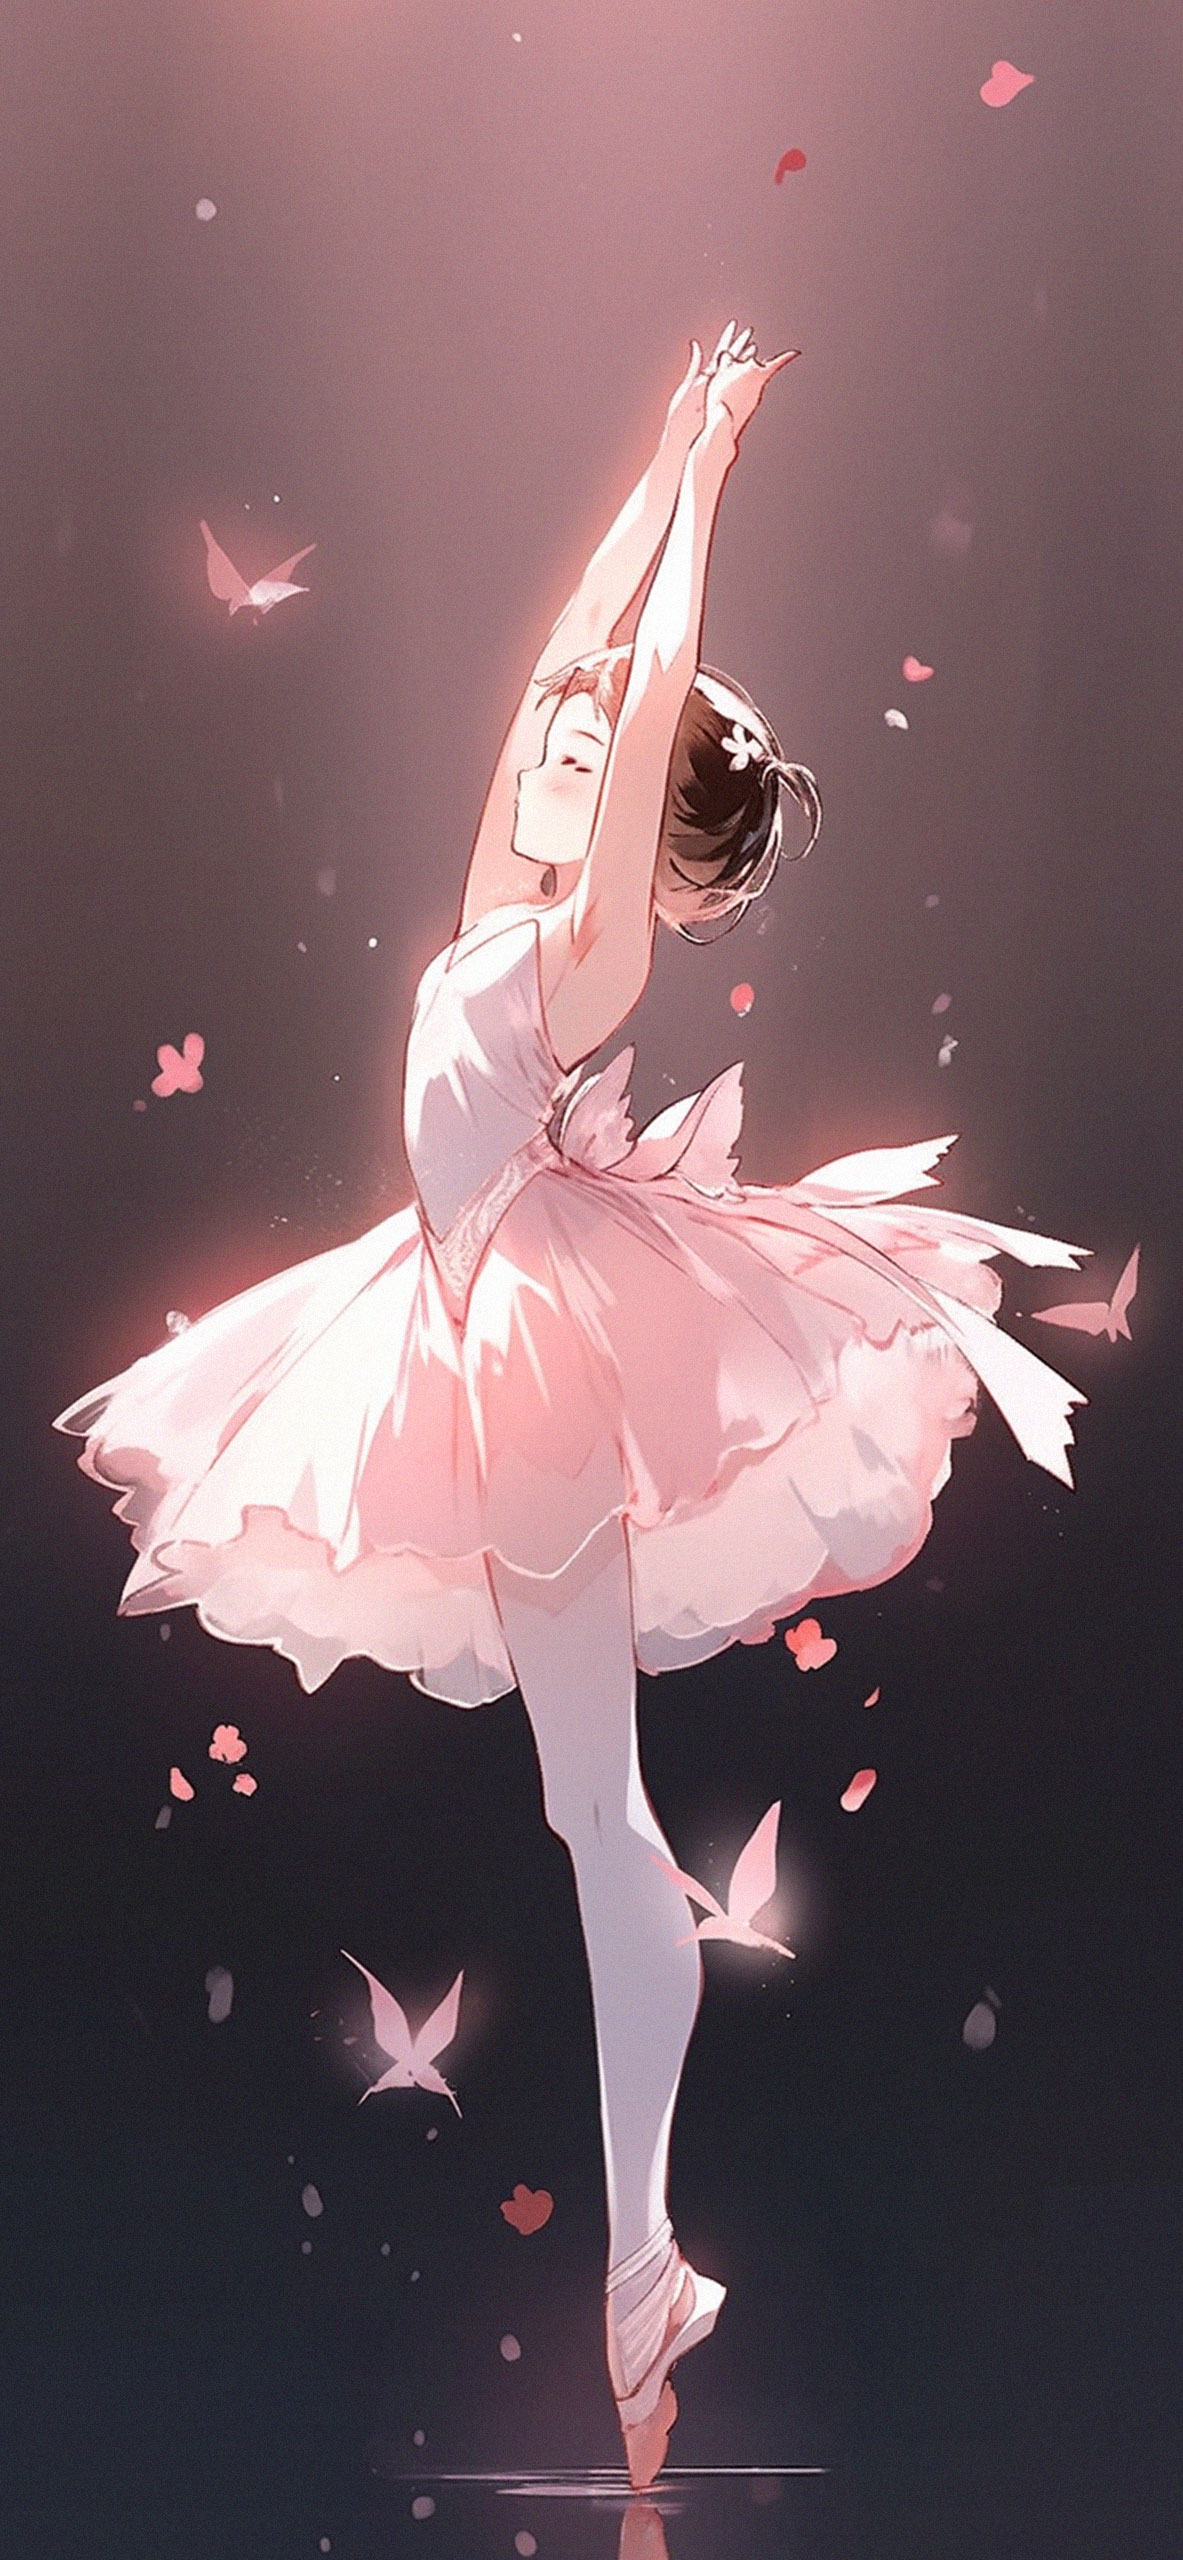 Cute Ballerina Girl Anime Wallpapers - Cute Anime Girl Wallpaper 4k